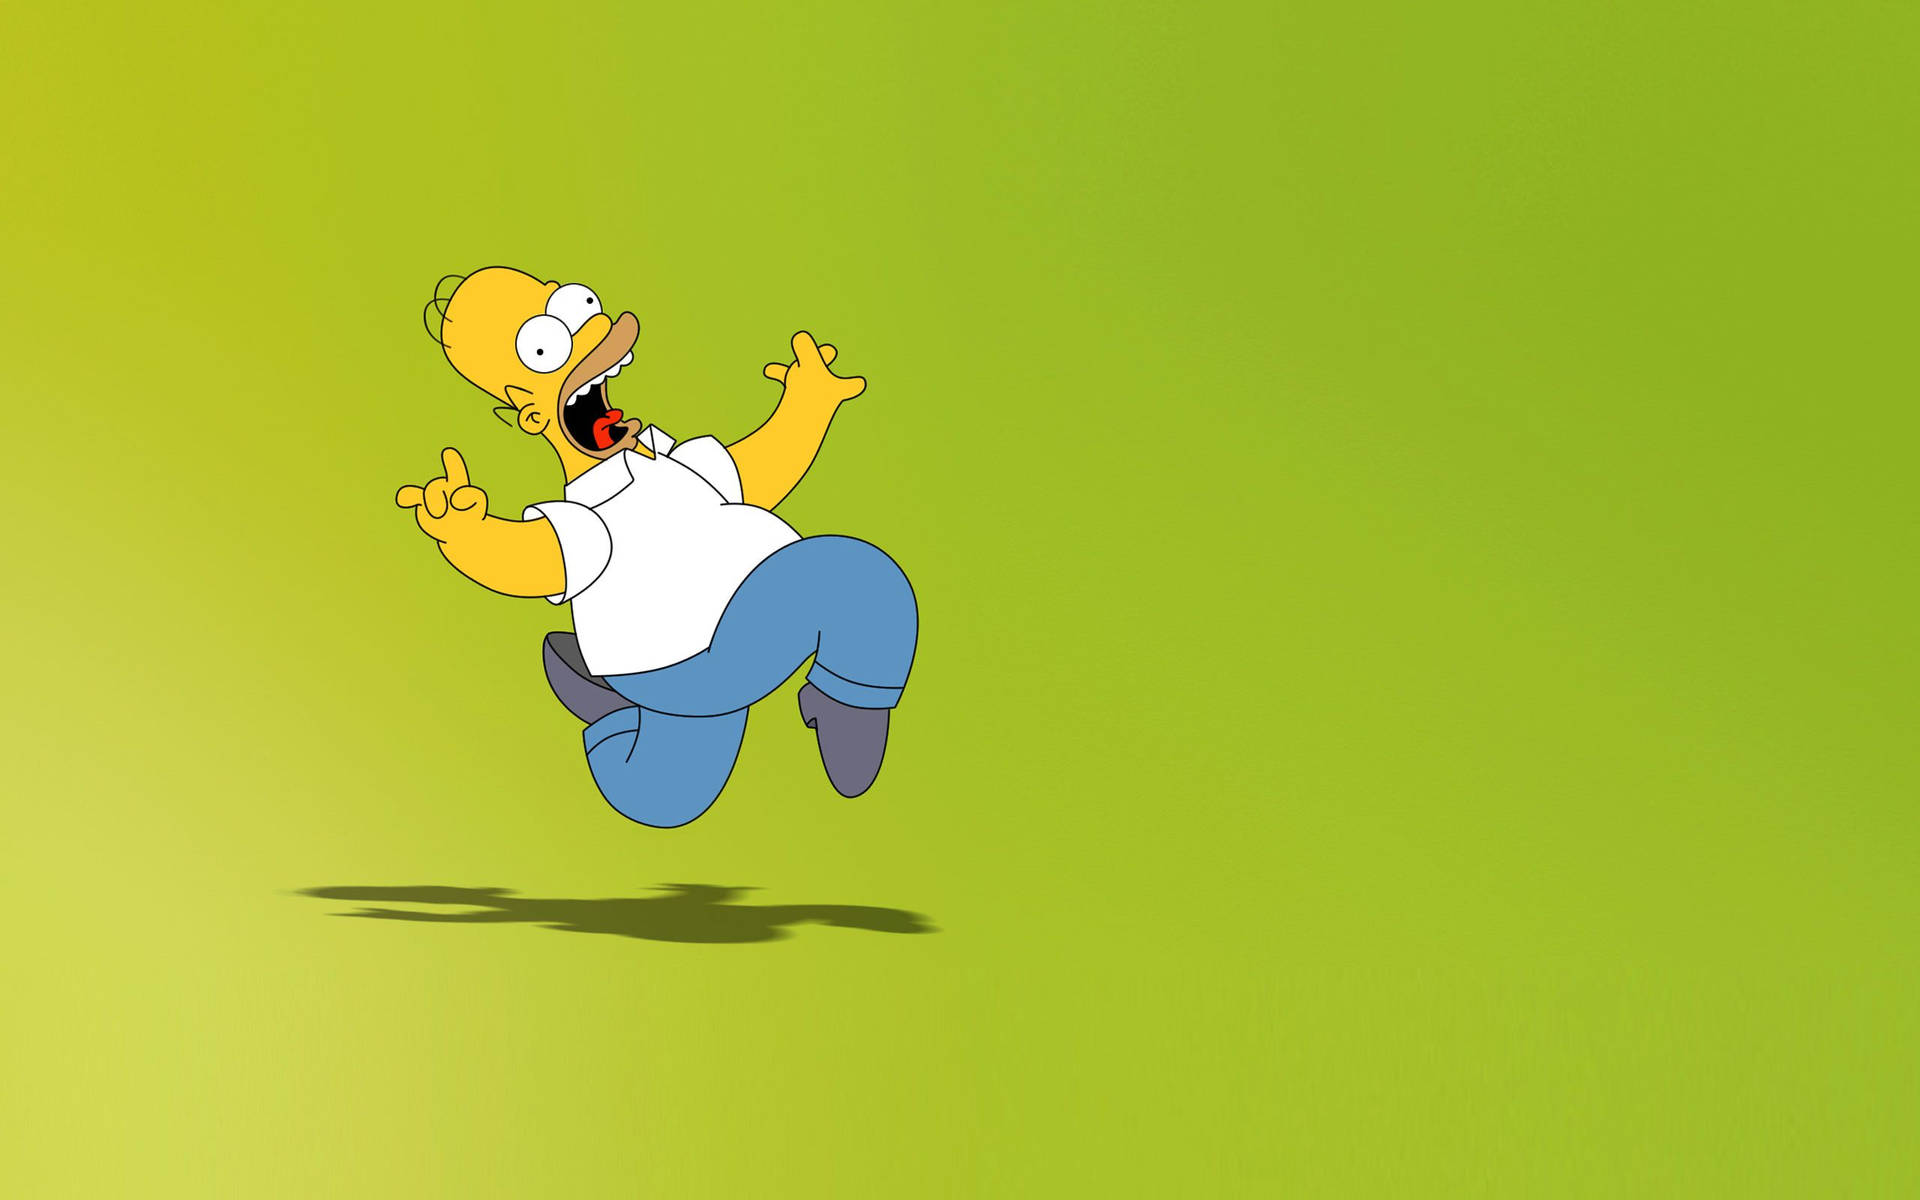 Sjove Homer The Simpsons tapeter til PC eller mobiltelefoner. Wallpaper